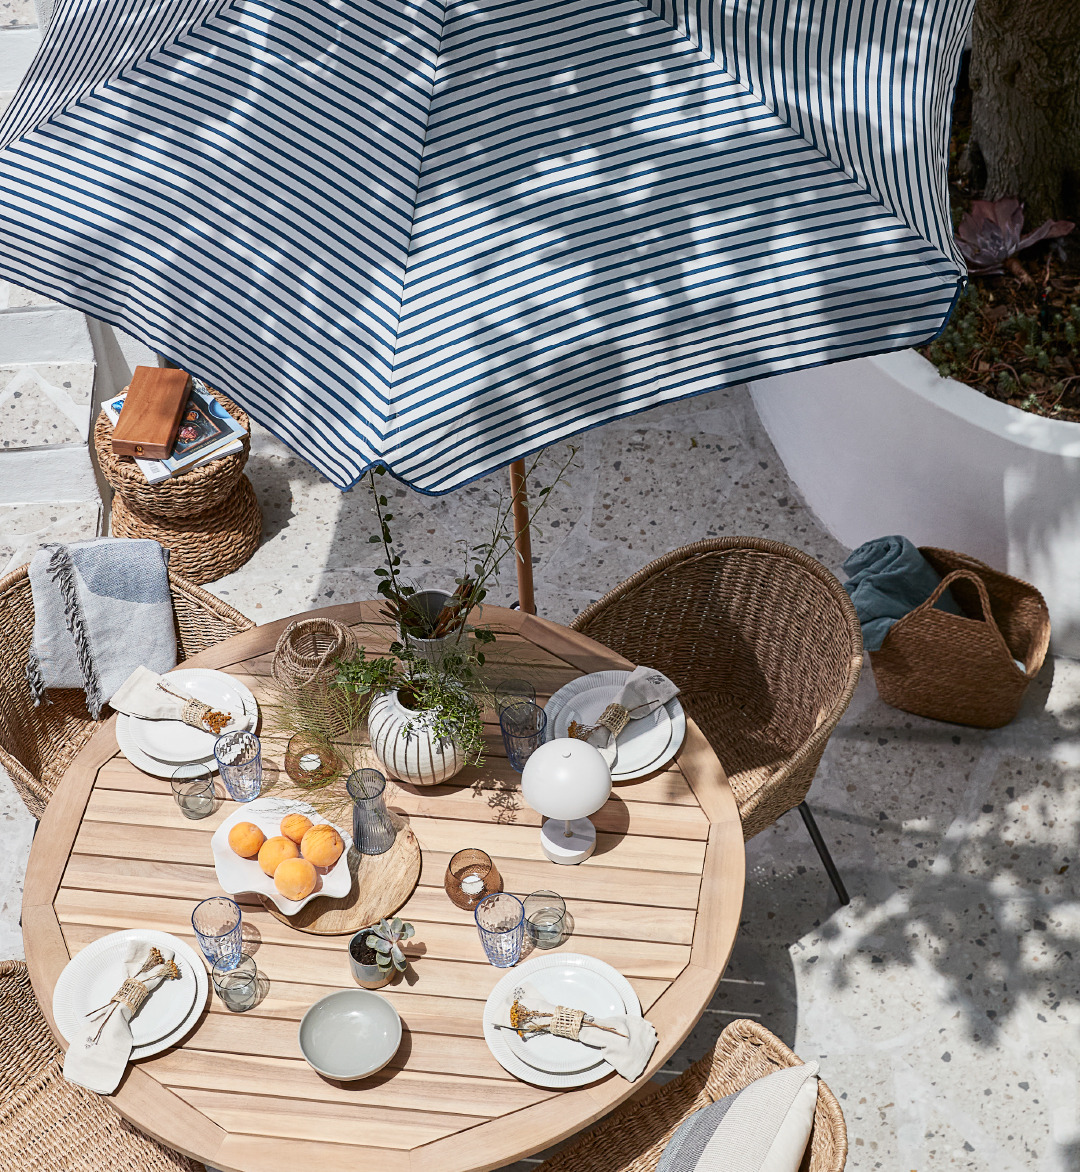 Postavljen baštenski sto i stolica ispod prugastog suncobrana na terasi